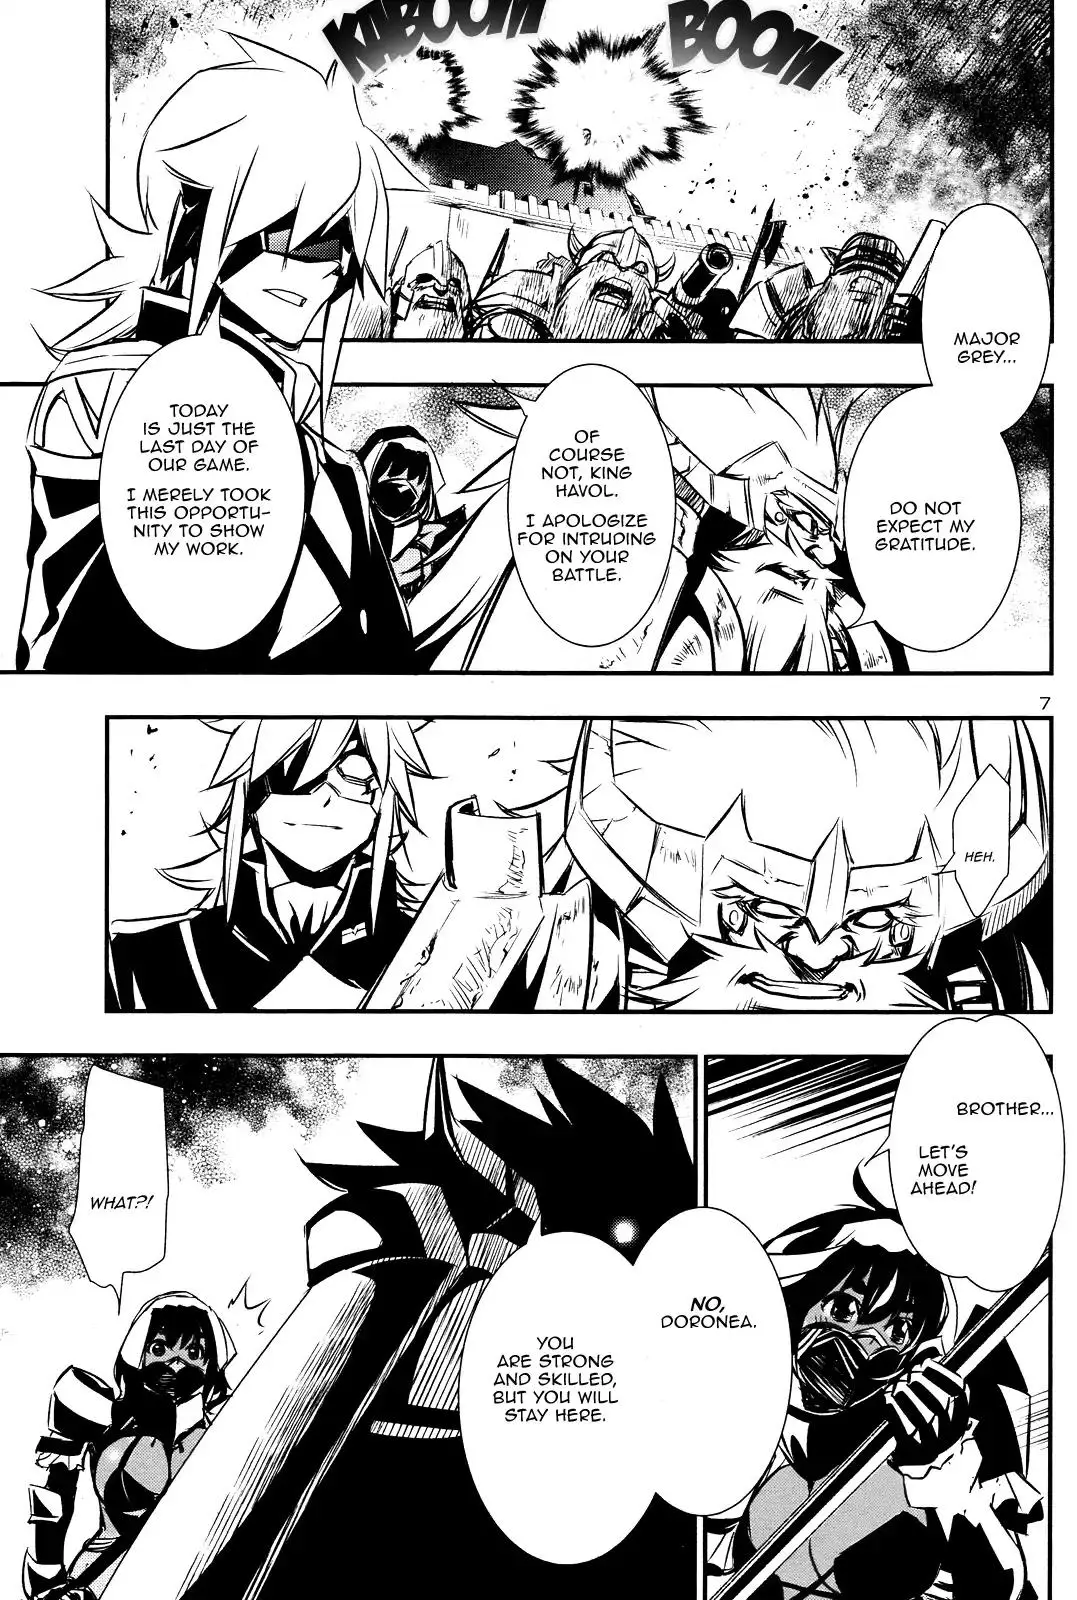 Shinju no Nectar - 12 page 6